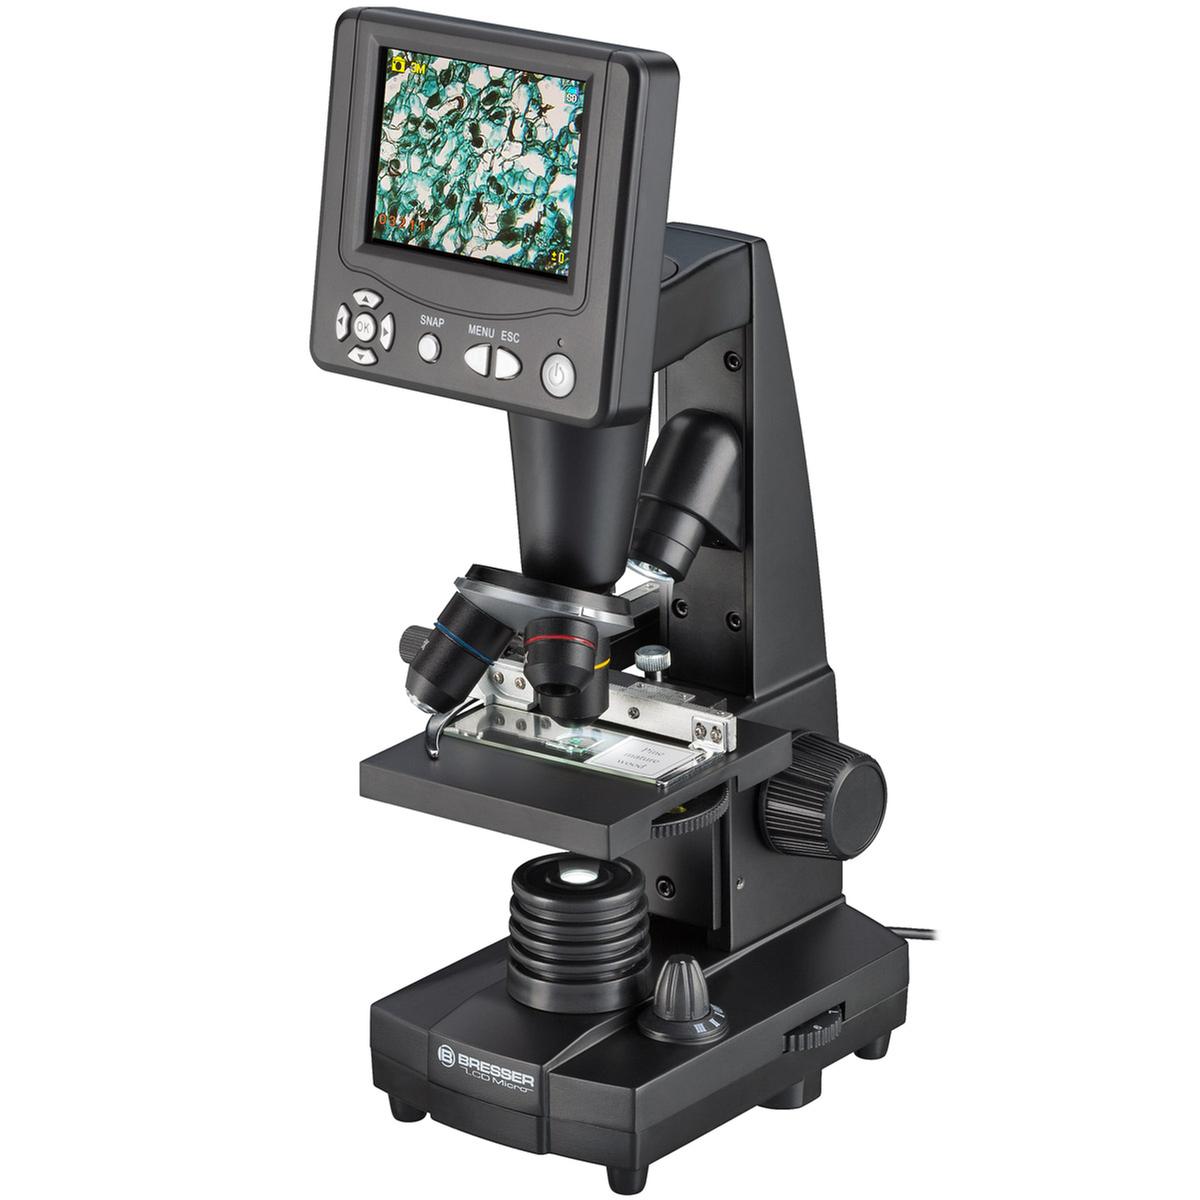 Microscopio Bresser de enseñanza con monitor LCD de 3,5" (8,9 cm) |  Miscellaneous | Toys"R"Us España